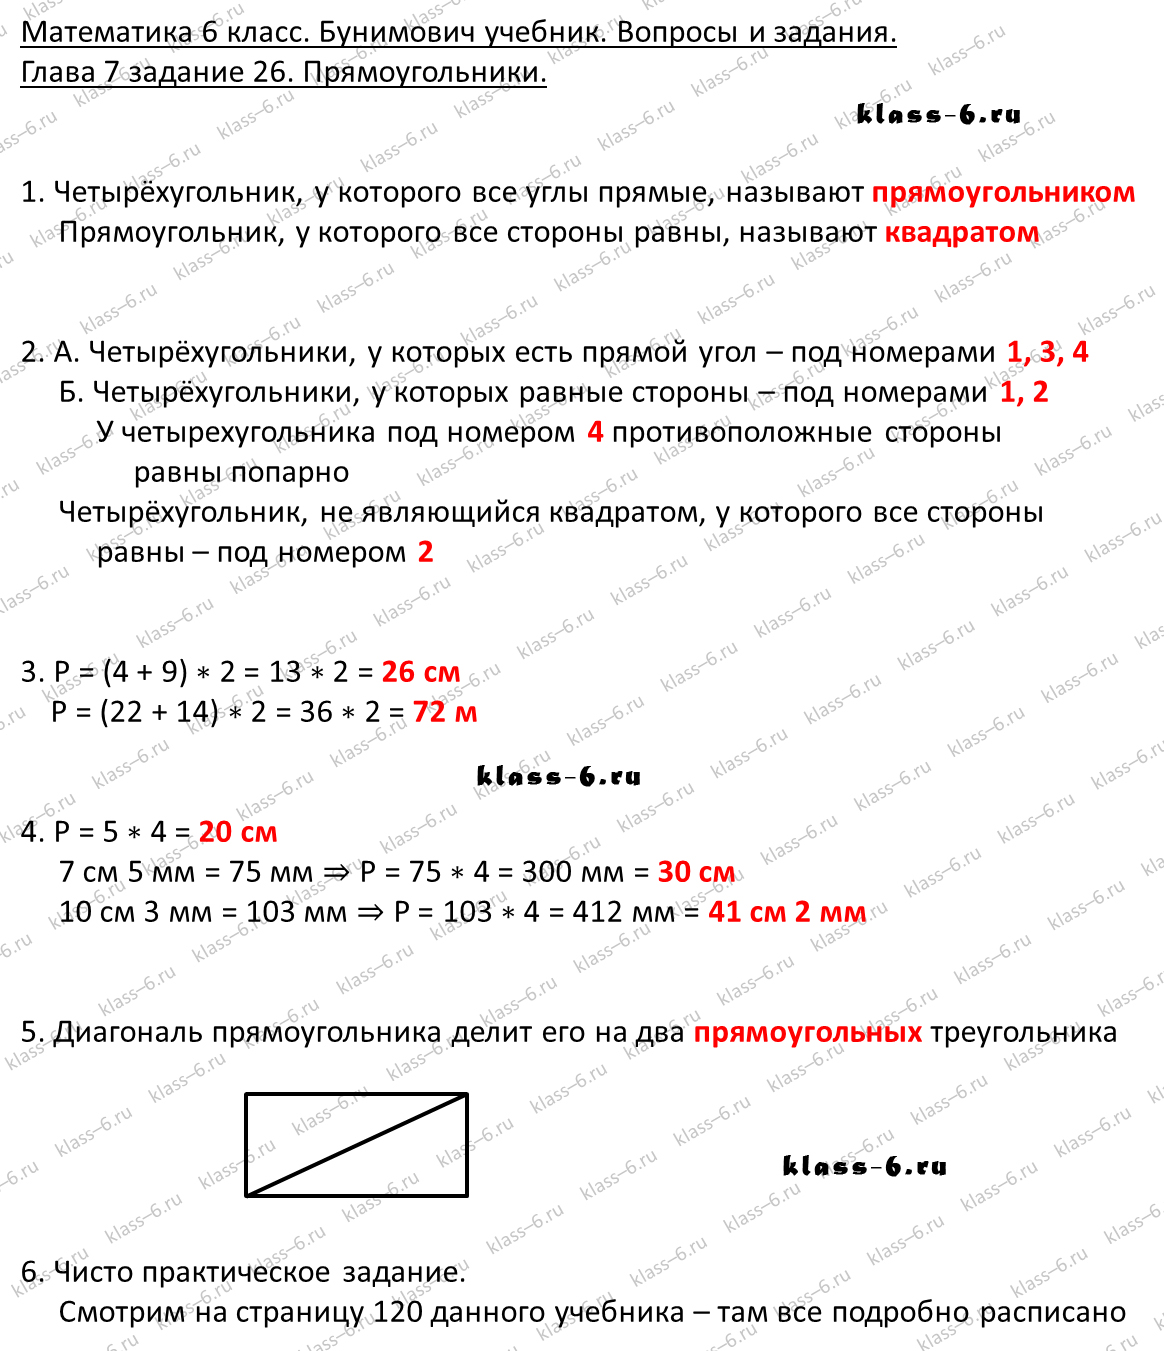 решебник и гдз по математике учебник Бунимович 5 класс вопросы и задания 7-26